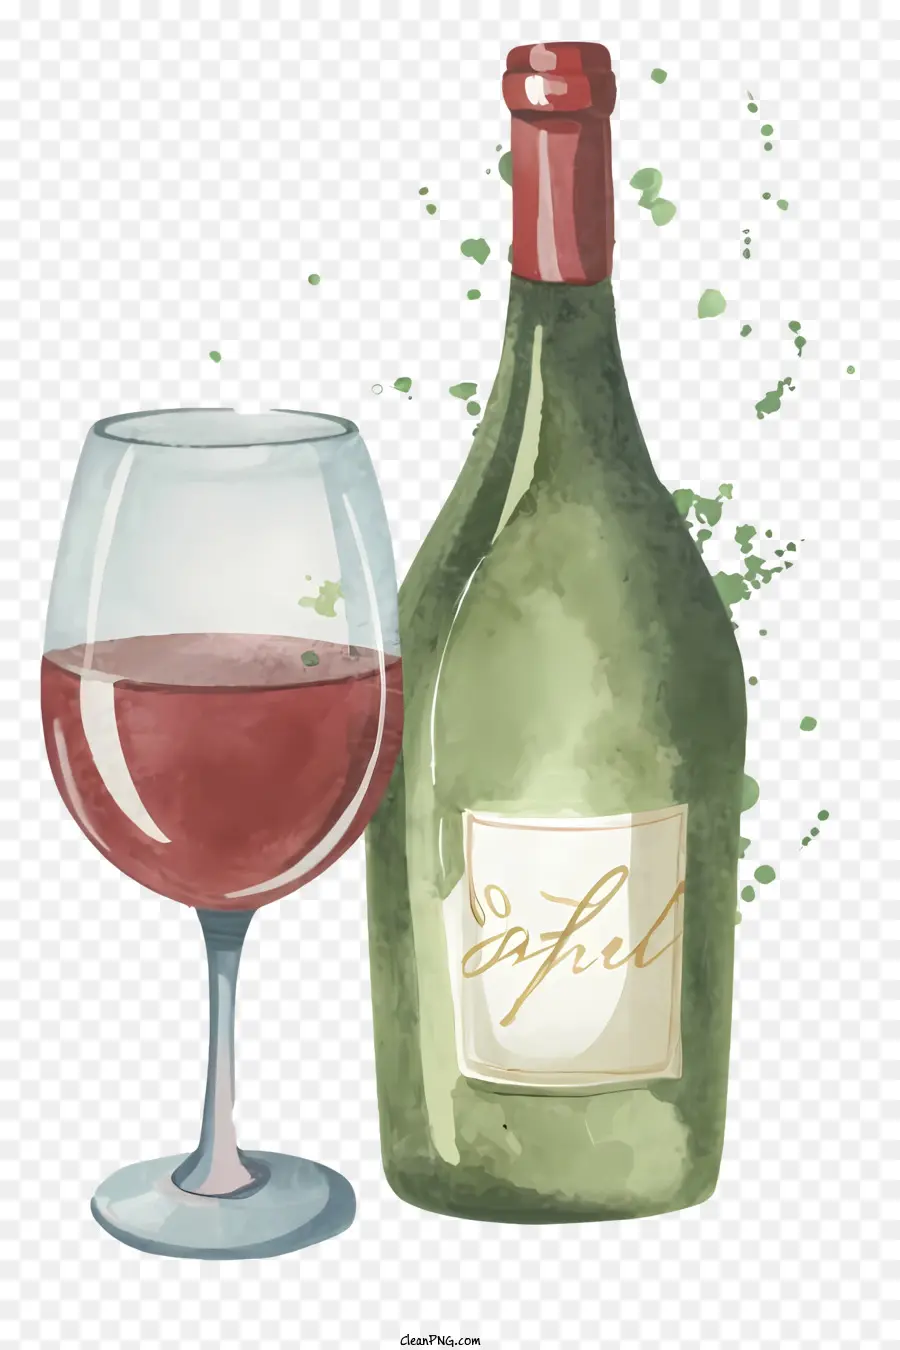 bicchiere di vino - Pittura realistica ad acquerello di bicchiere di vino e bottiglia